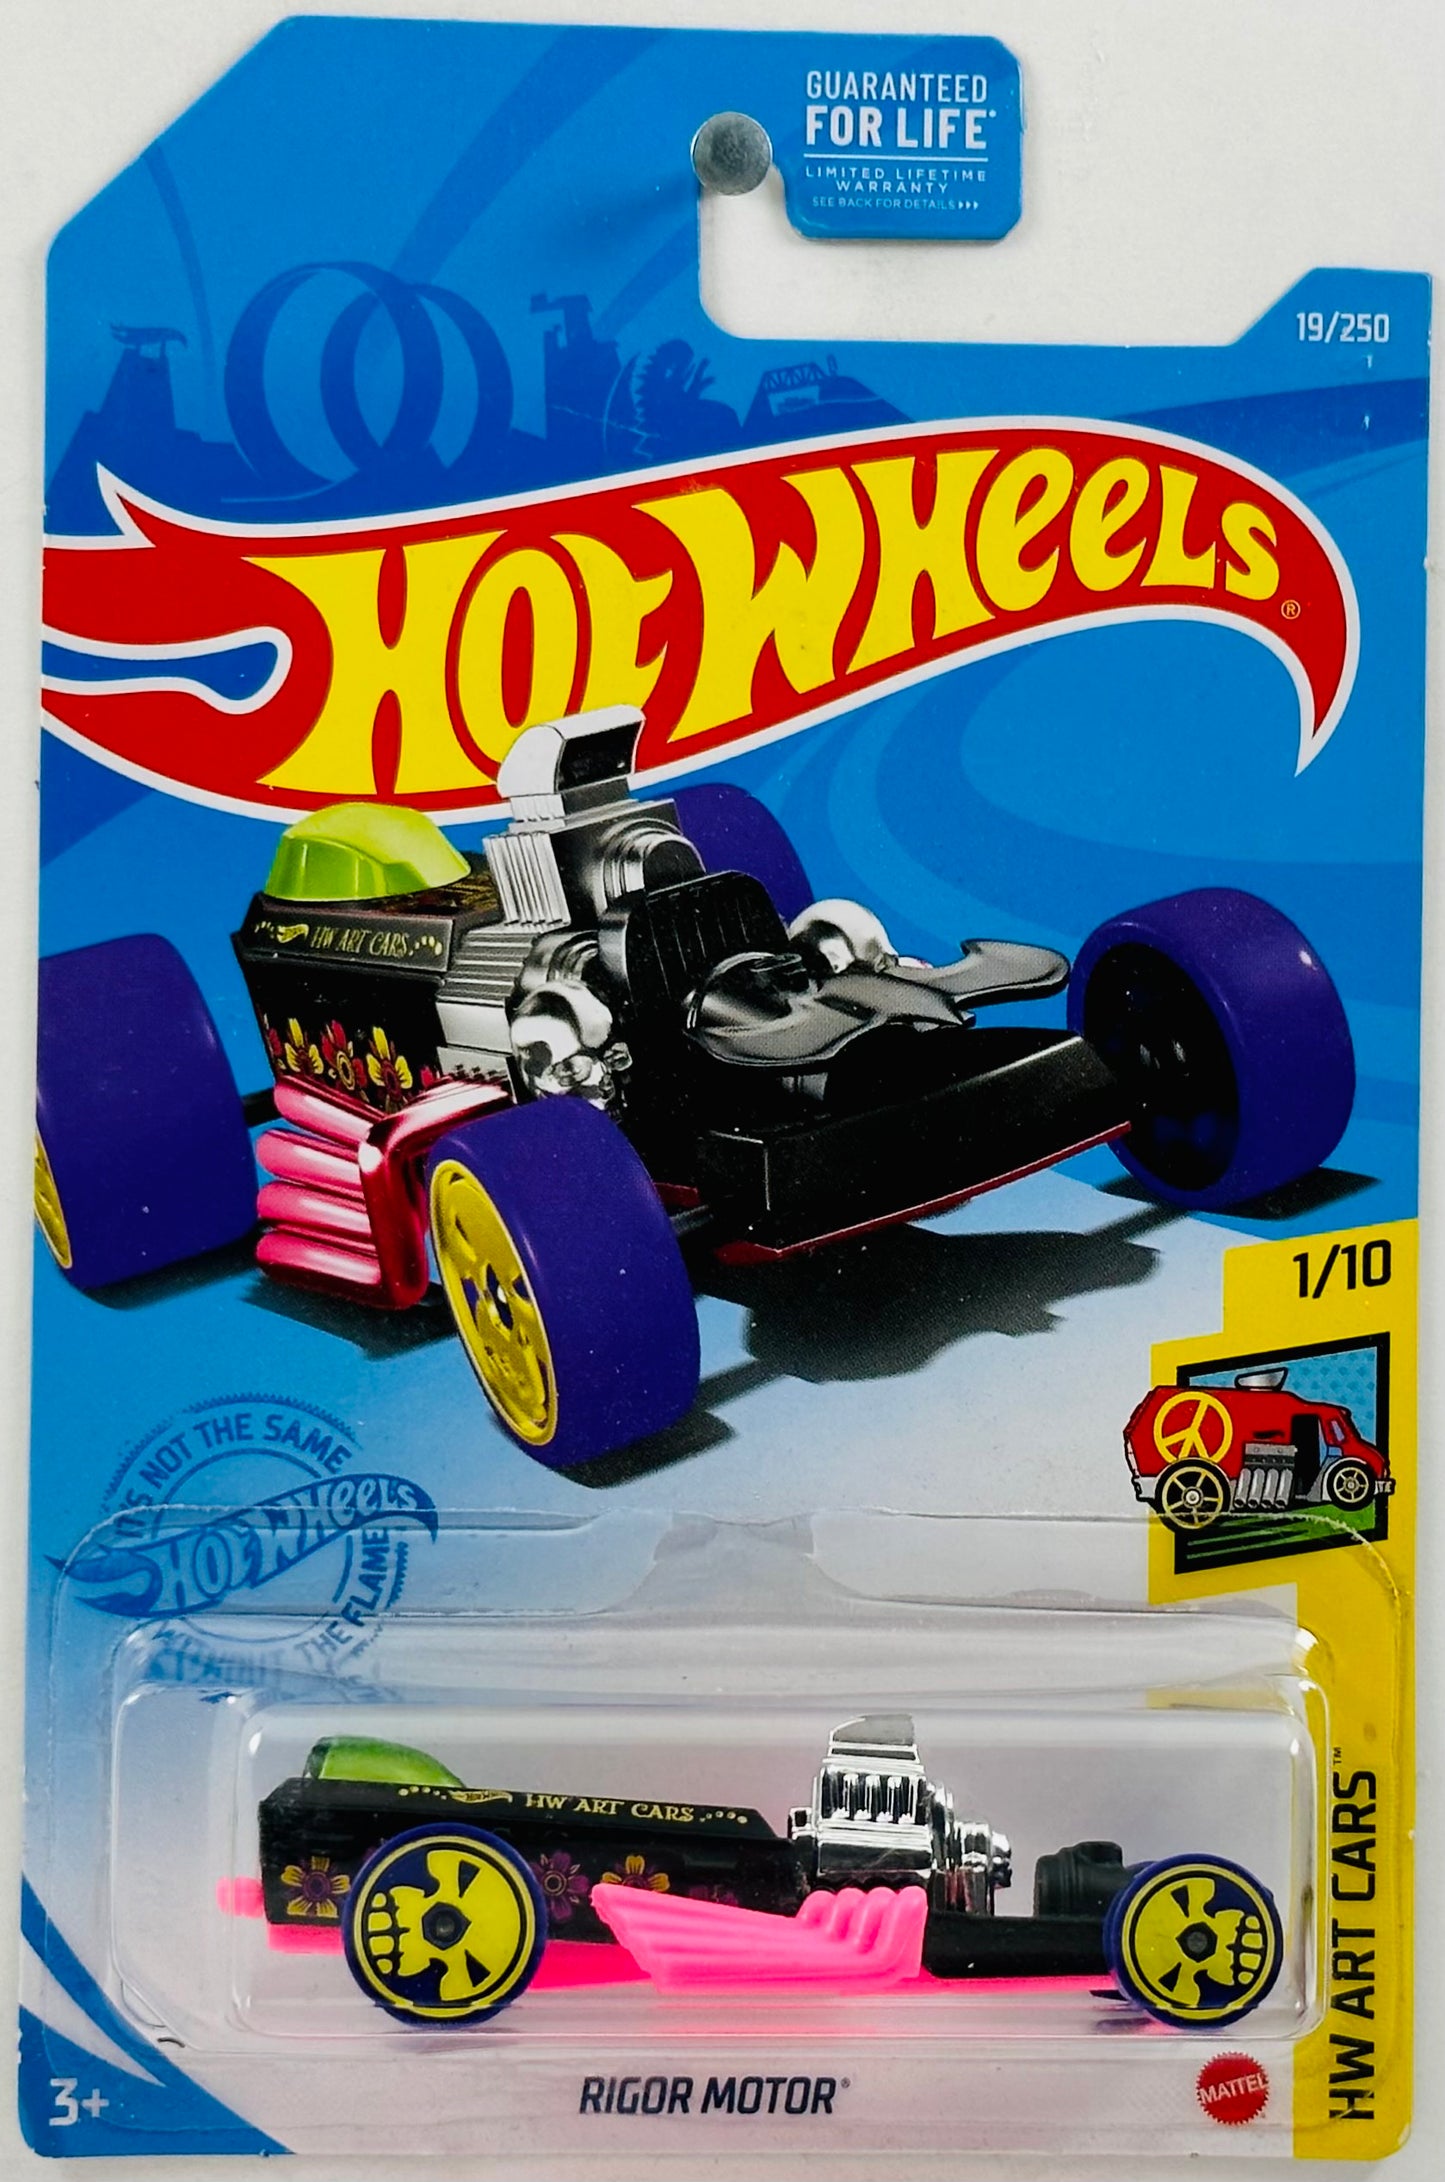 Hot Wheels 2021 - Collector # 019/250 - HW Art Cars 01/10 - Rigor Motor - Black - USA